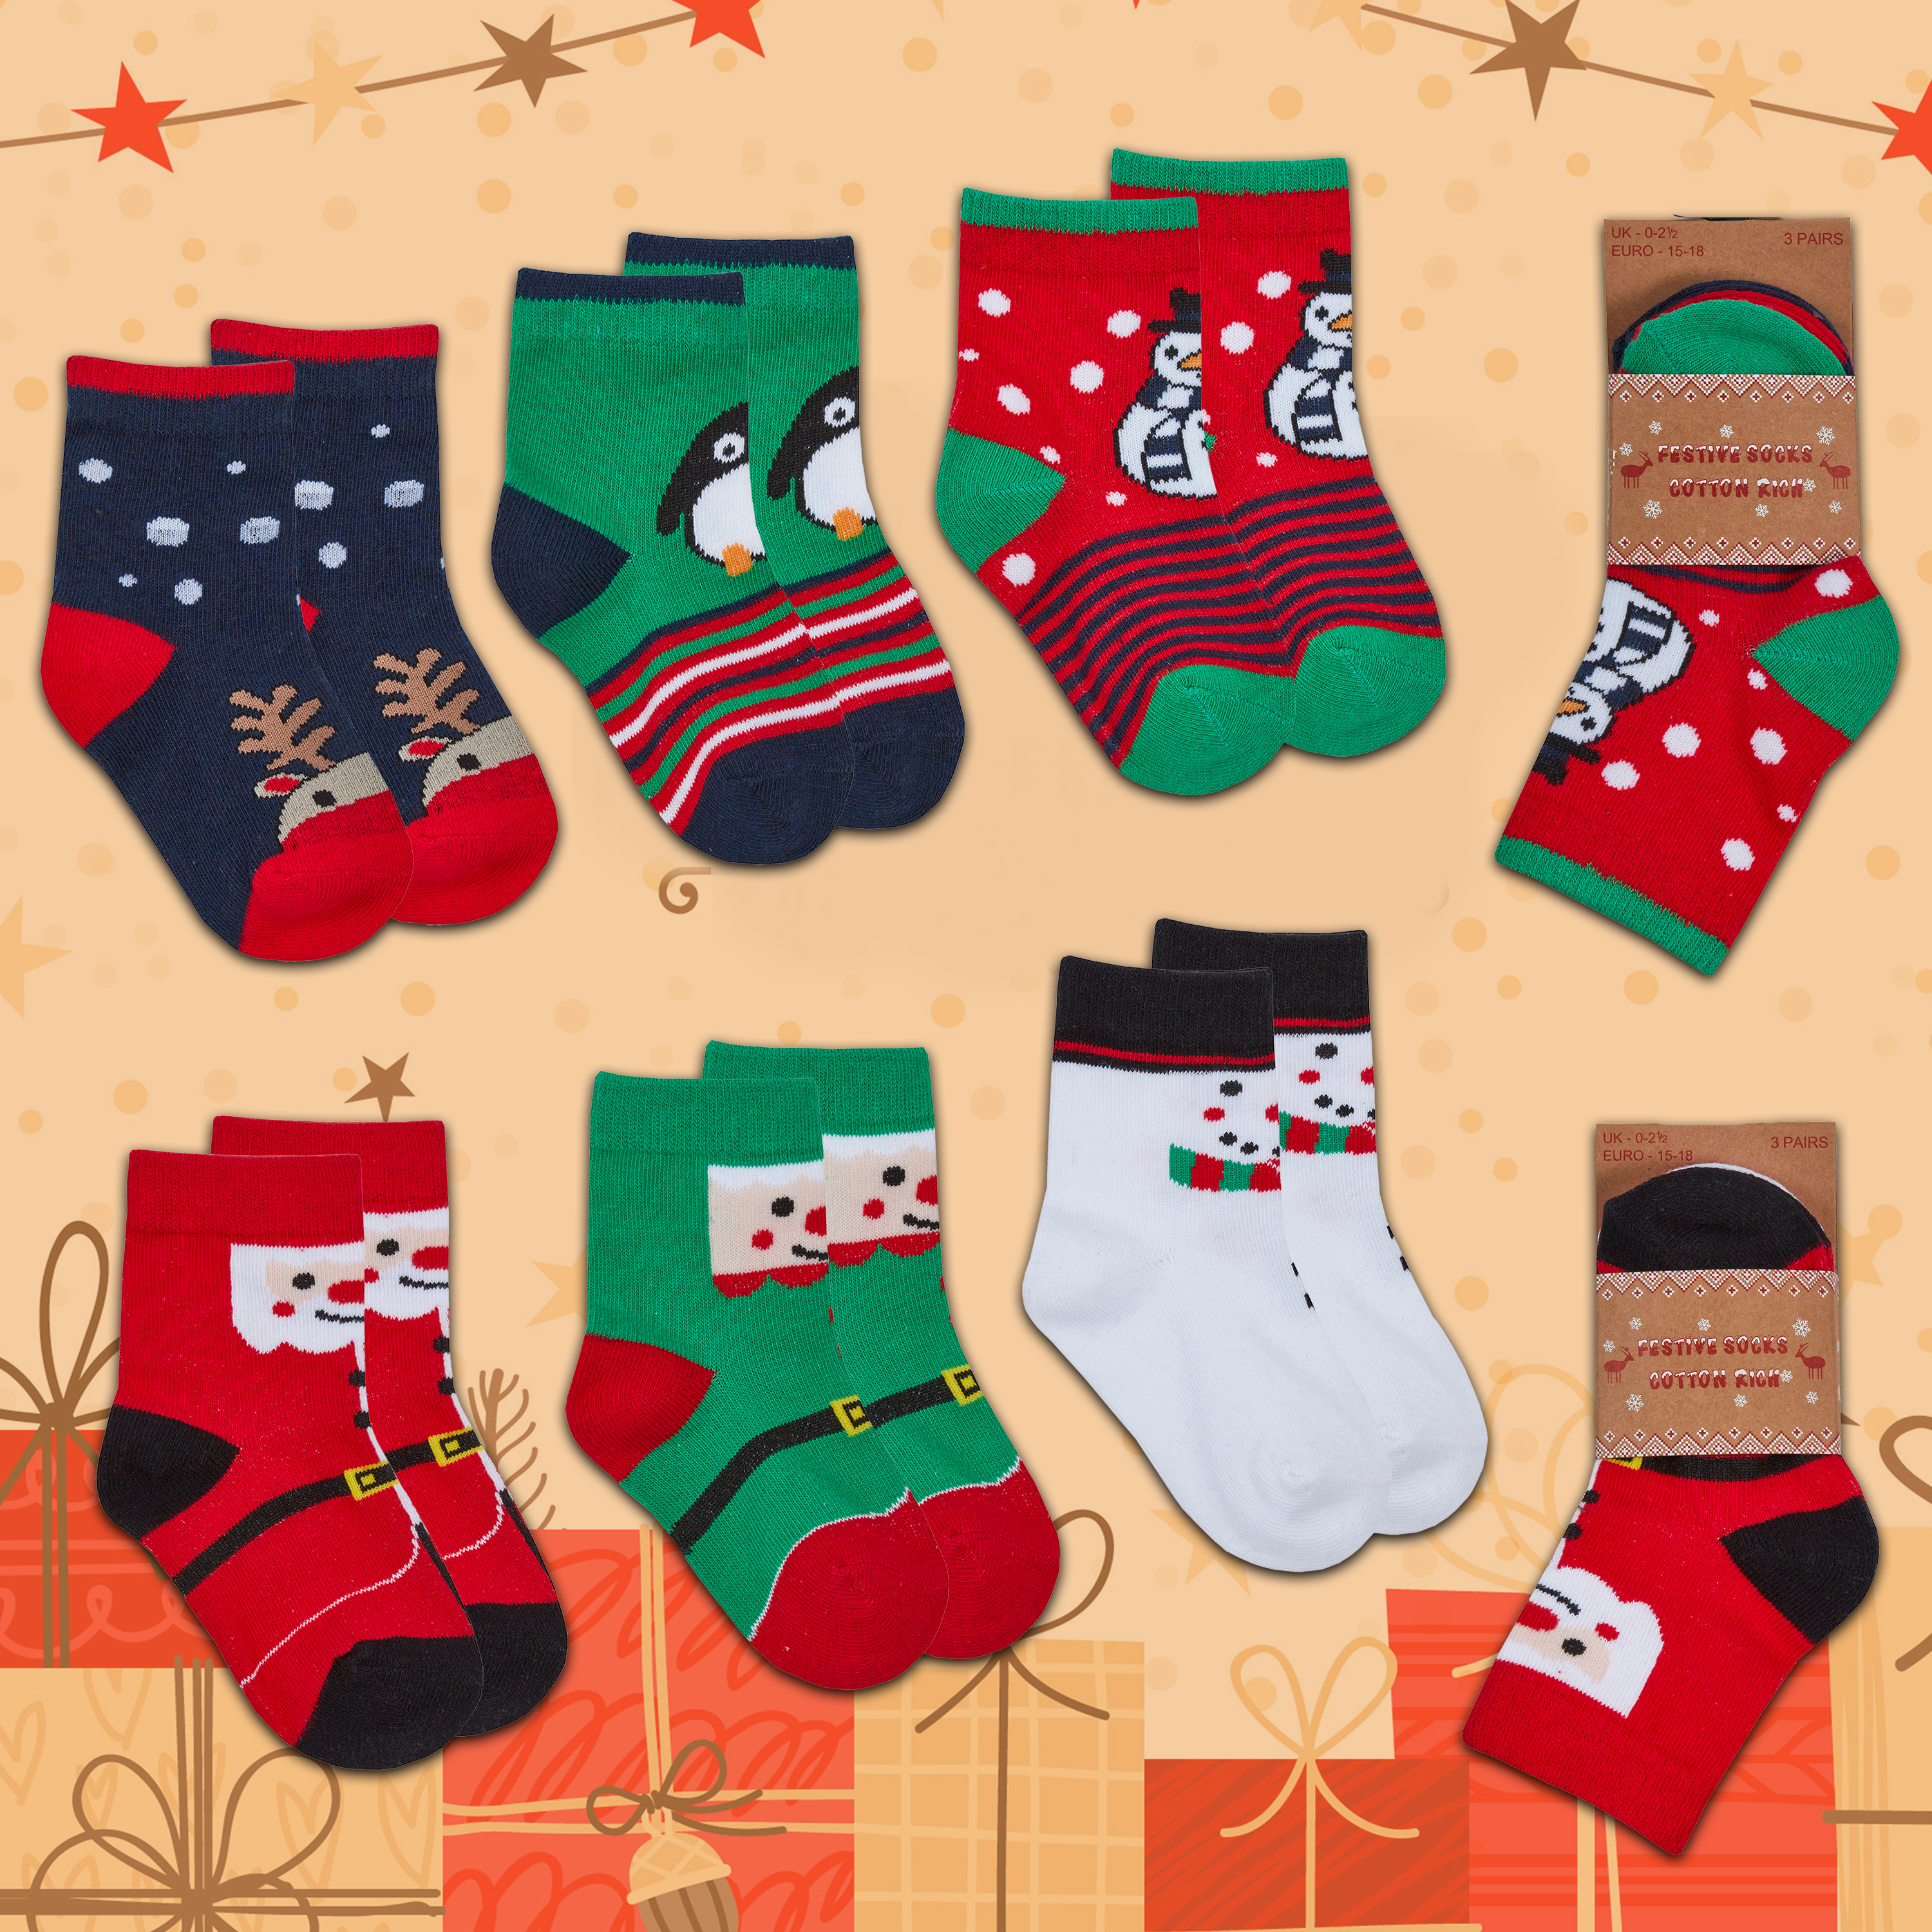 Penguin & Elf Baby Infant Festive Christmas Socks Boy Girl Gift Pack of 2 